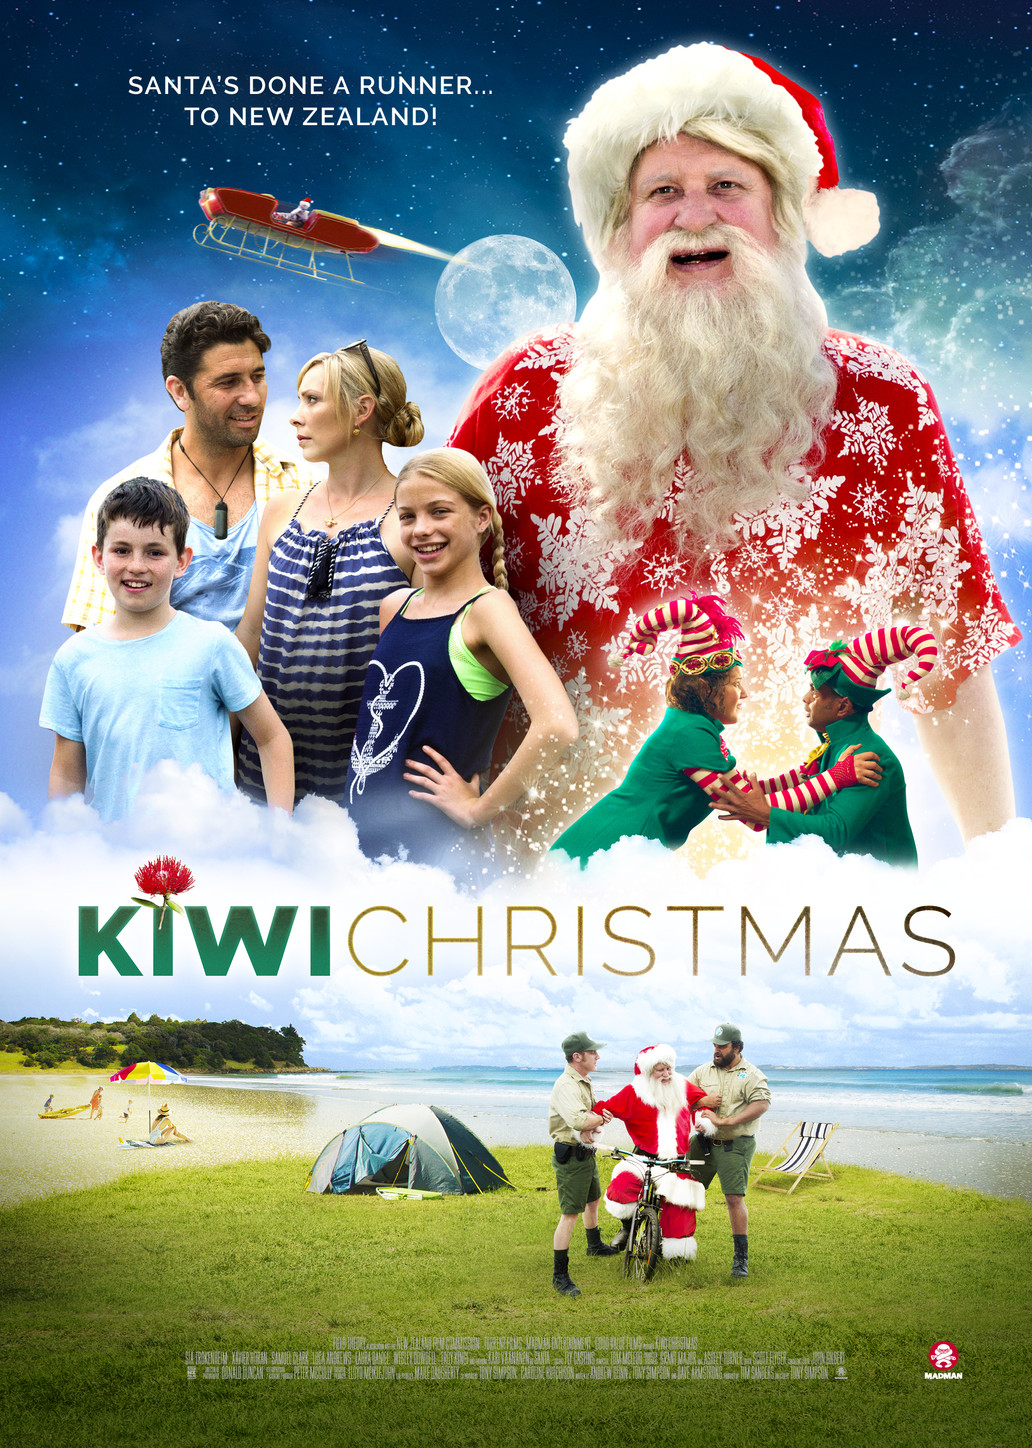 Kiwi Christmas (2017) starring Kari Väänänen on DVD on DVD